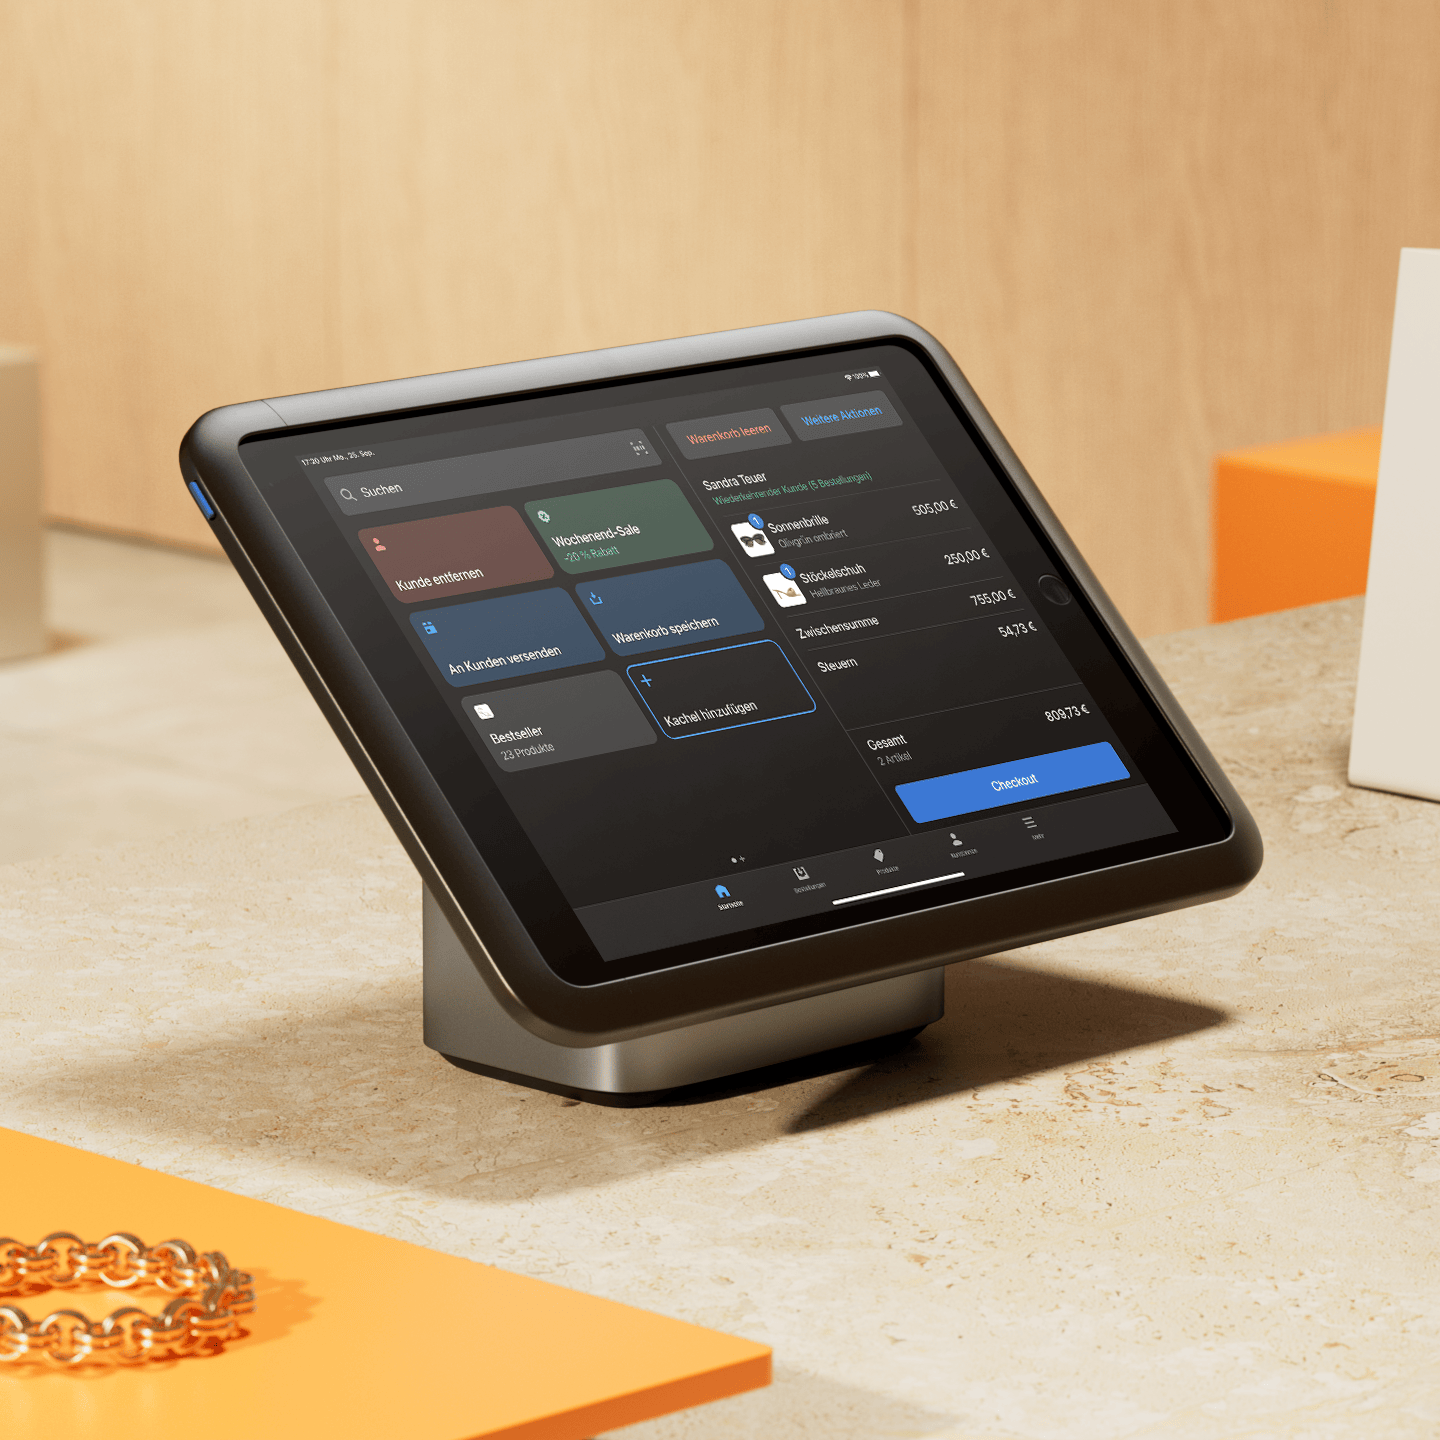 Ein auf einer Ladentheke befindliches POS Tablet, auf dem Shopify POS ausgeführt und auf dem Display angezeigt wird.